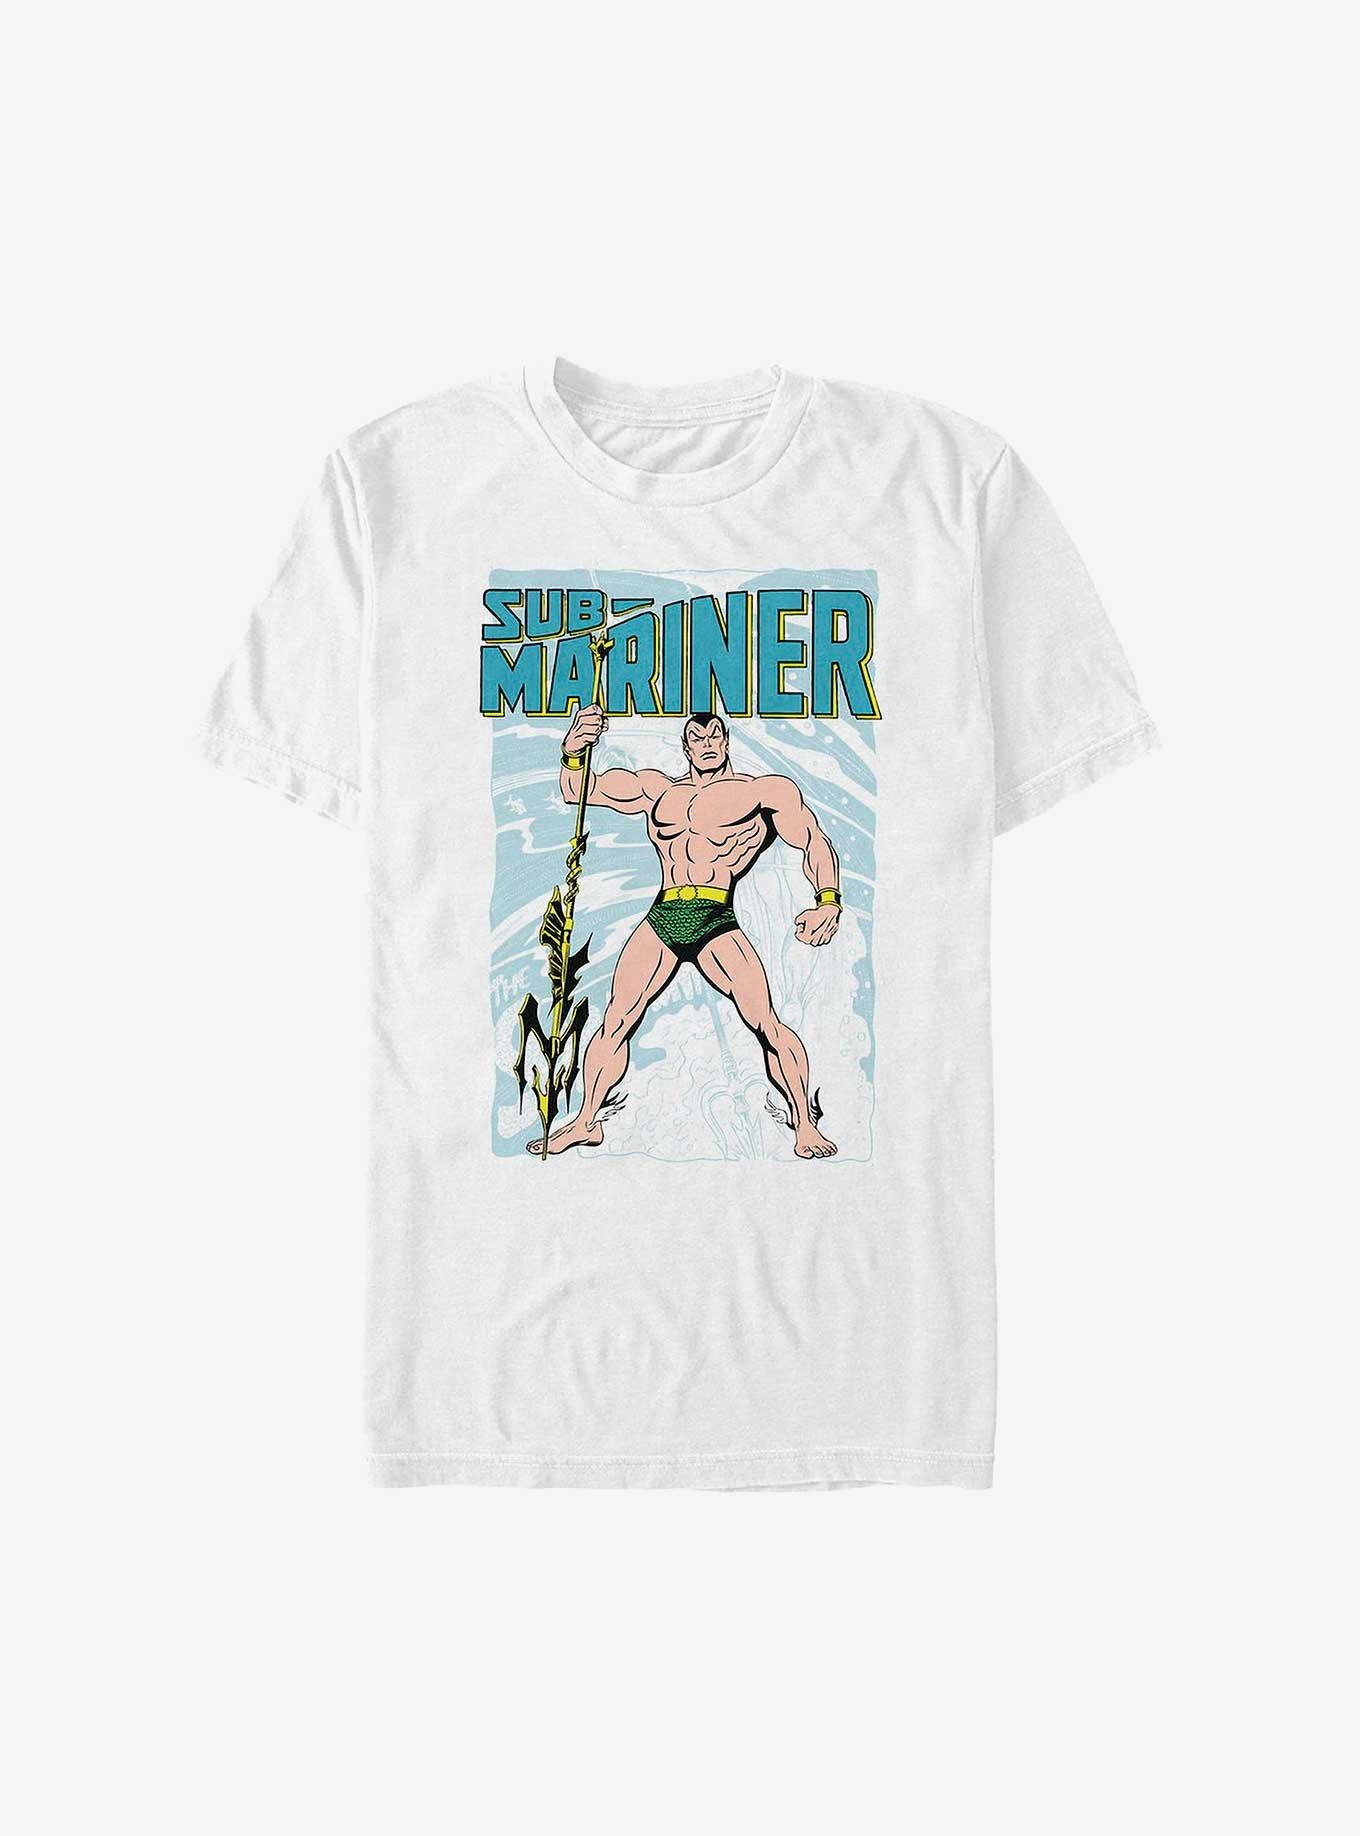 Marvel Sub-Mariner Surf T-Shirt, WHITE, hi-res